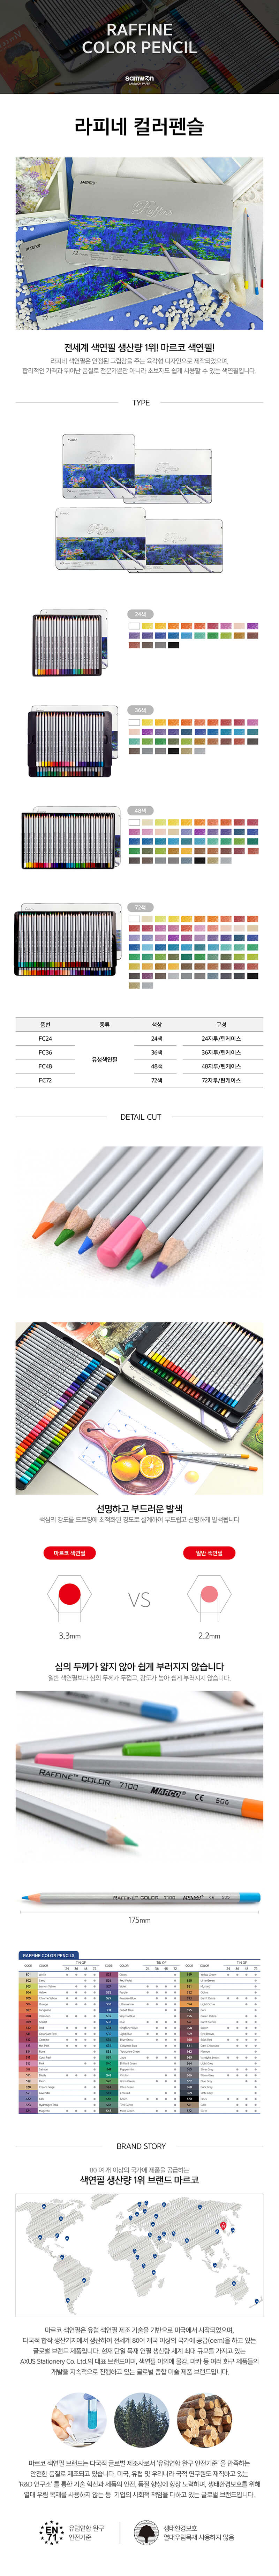 마르코 라피네 유성색연필